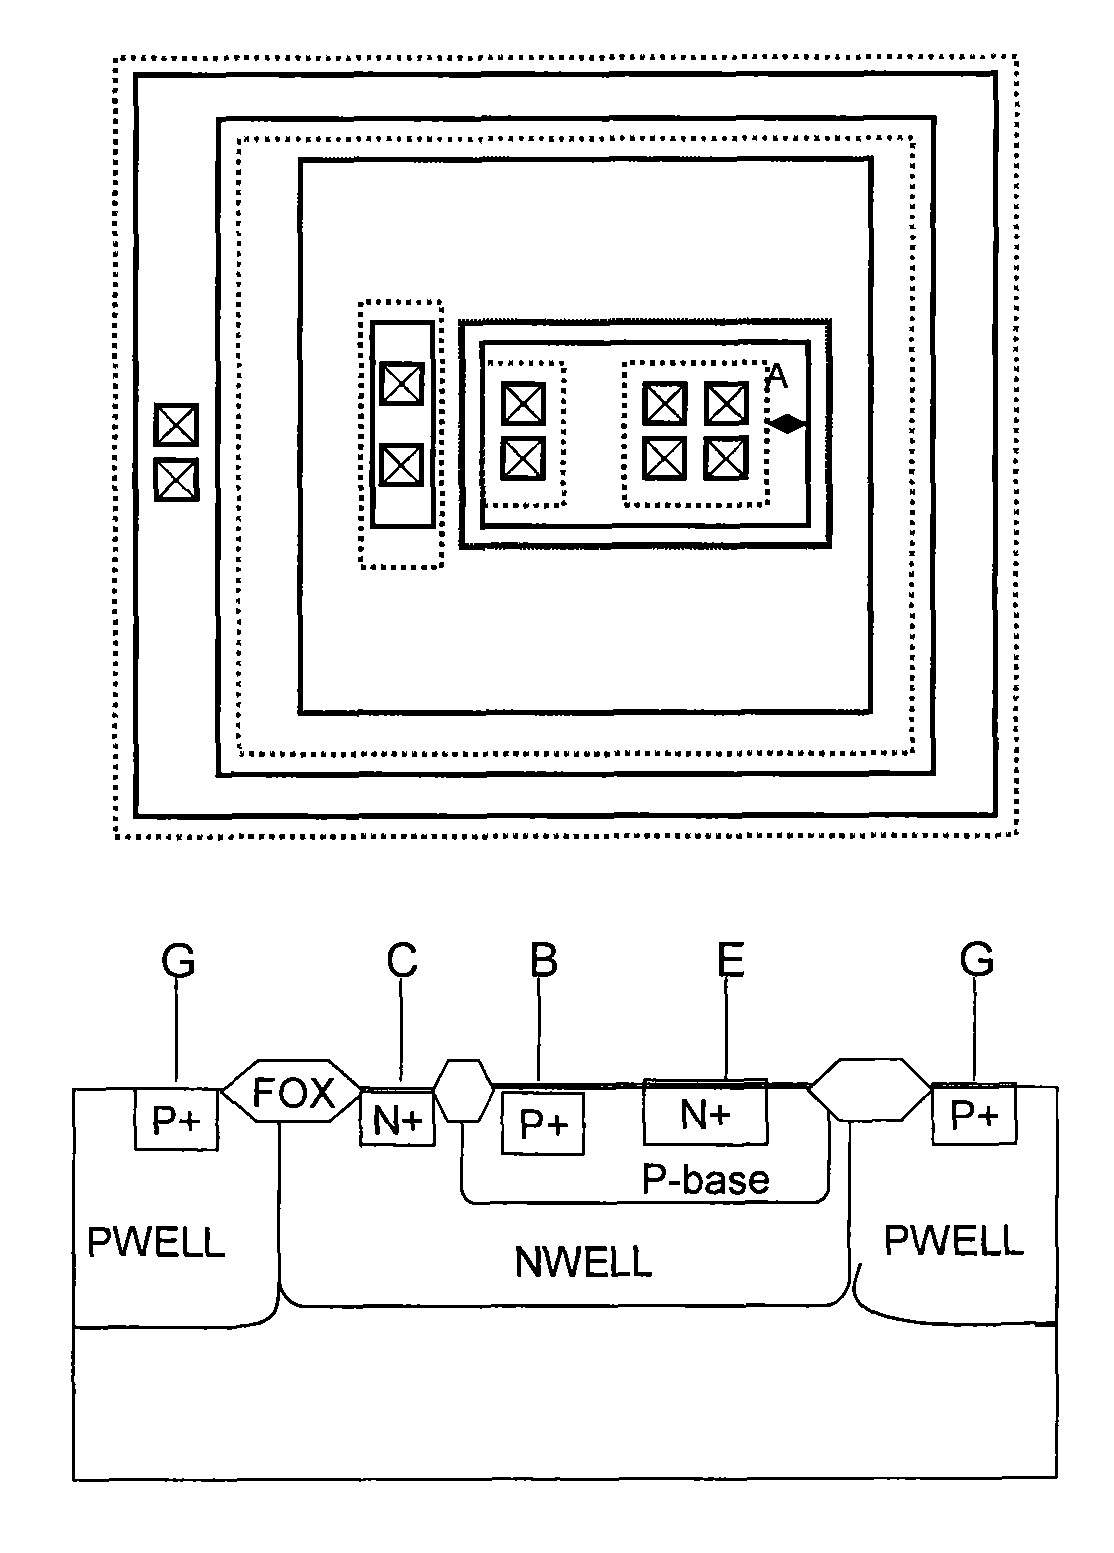 Method for manufacturing bipolar transistor